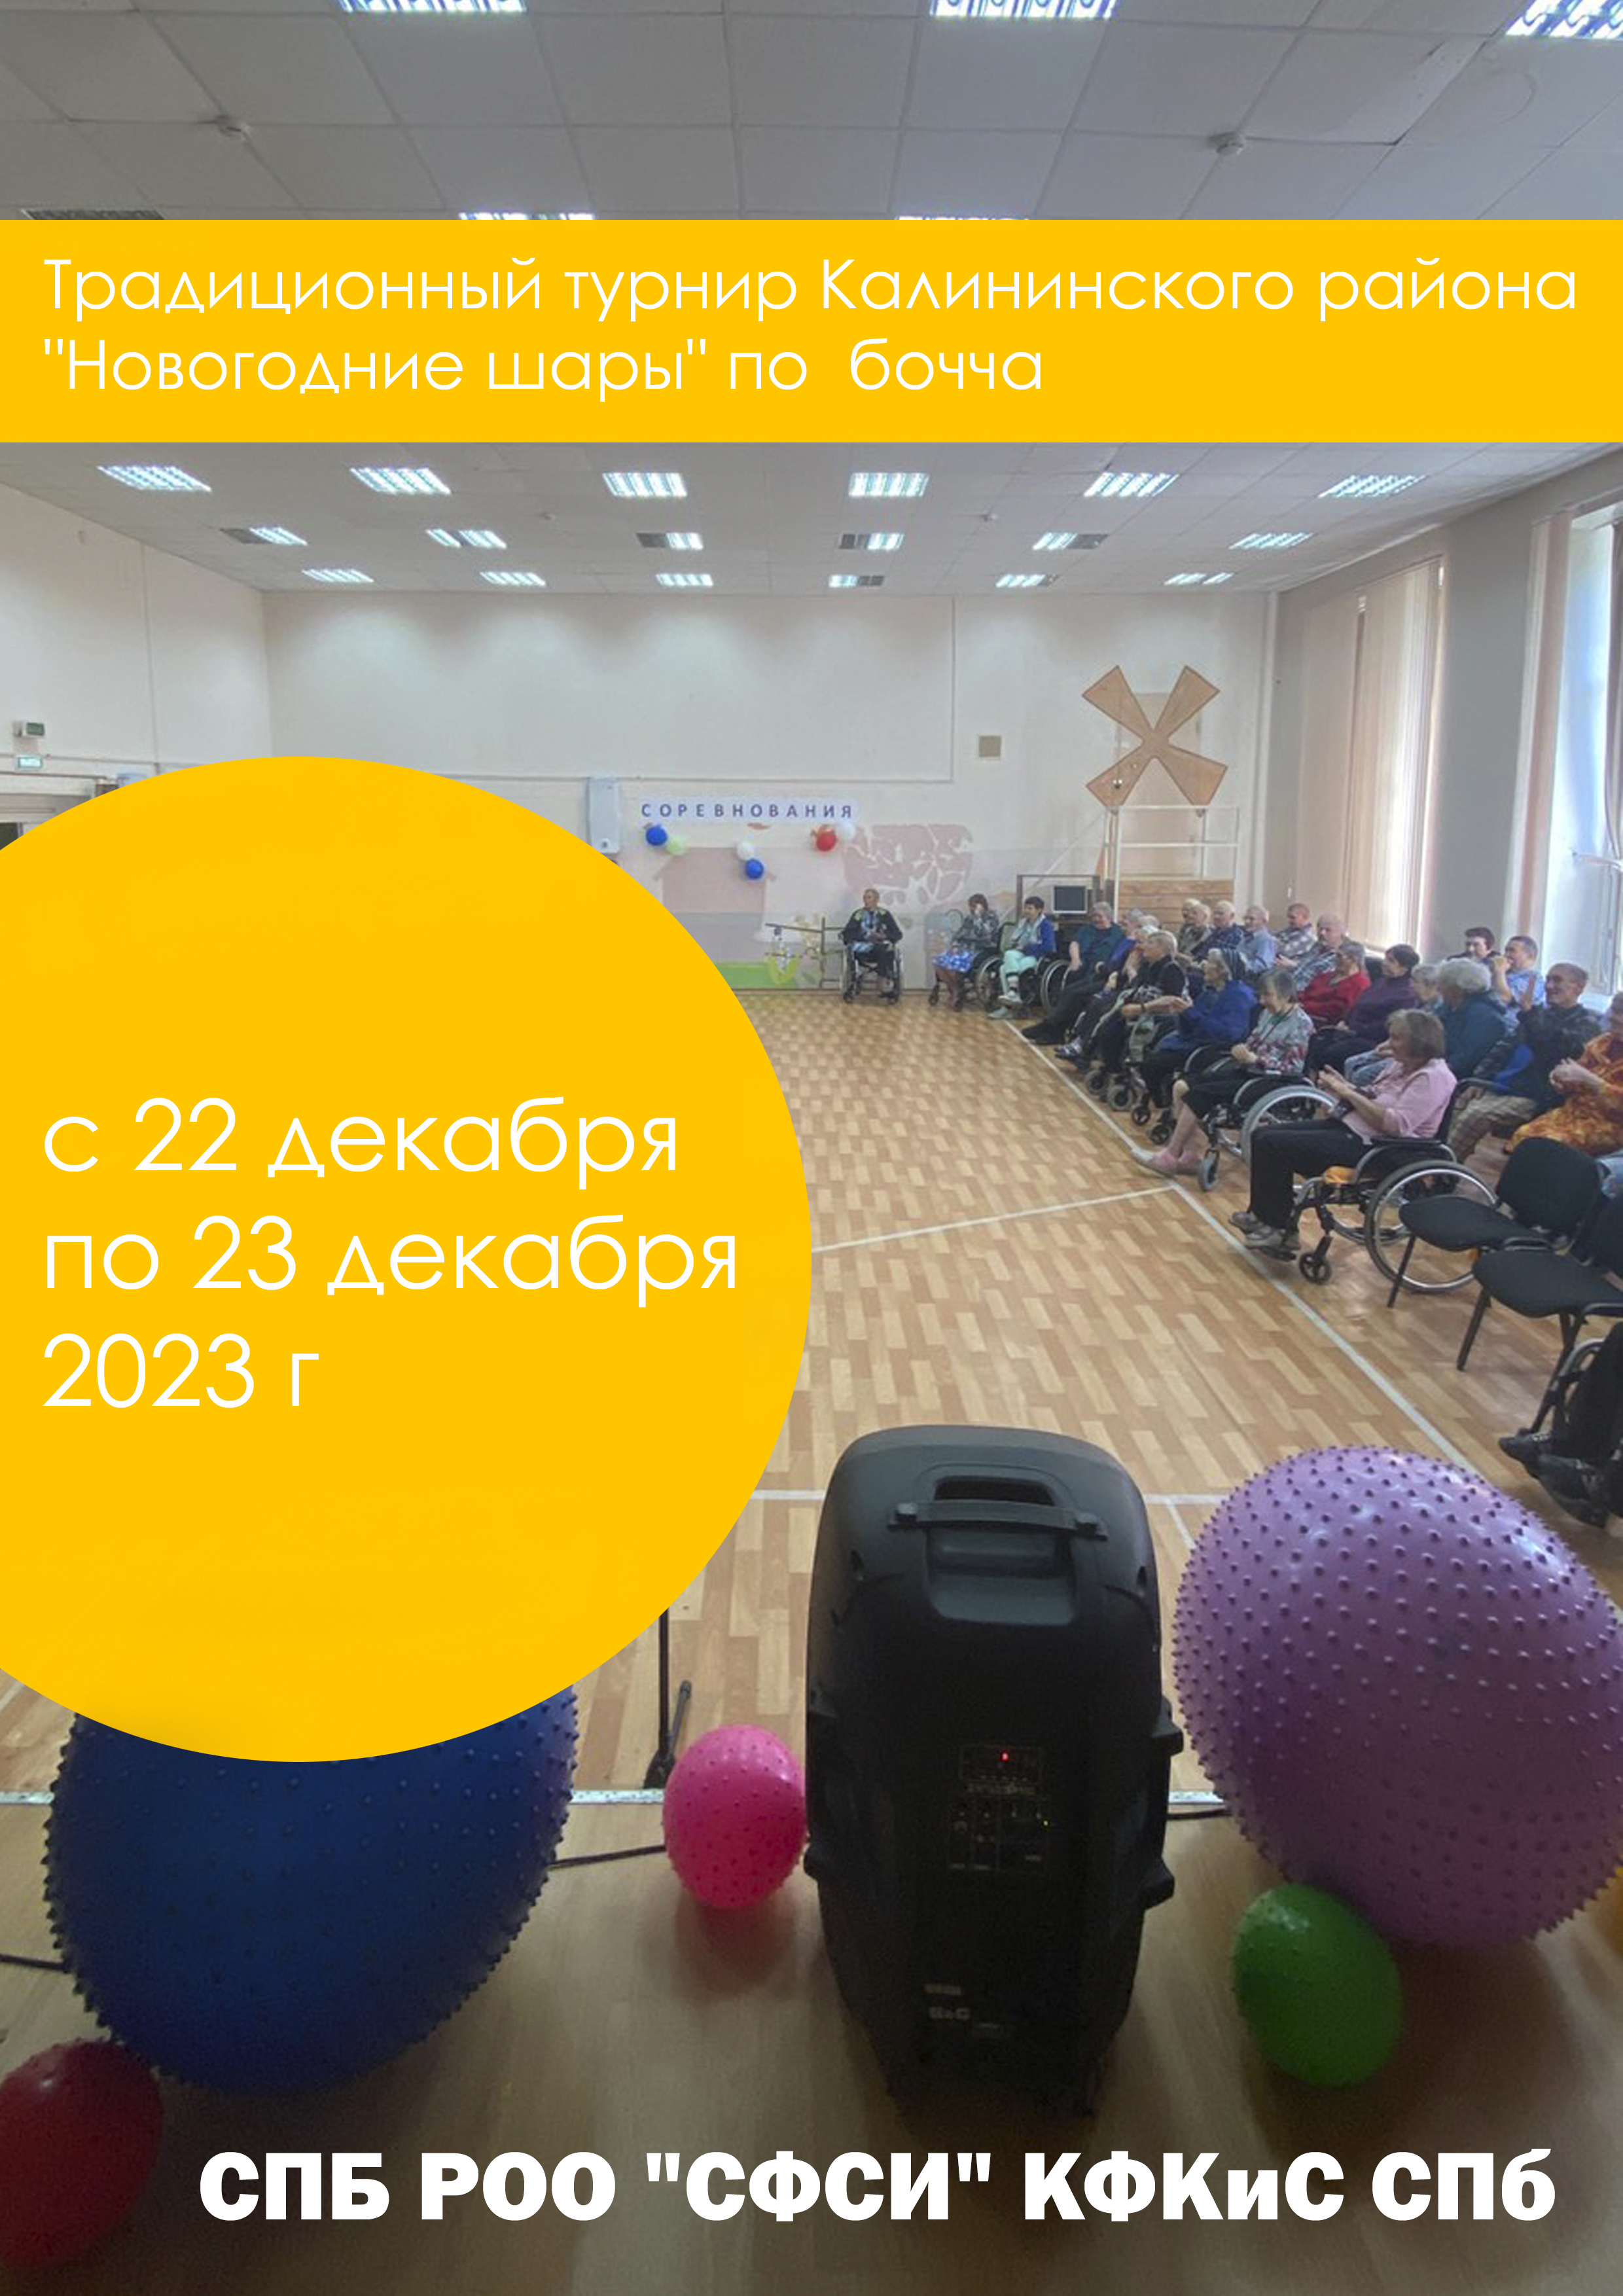 Традиционный турнир Калининского района "Новогодние шары" по бочча 2023 22  december
 2023  rok
 